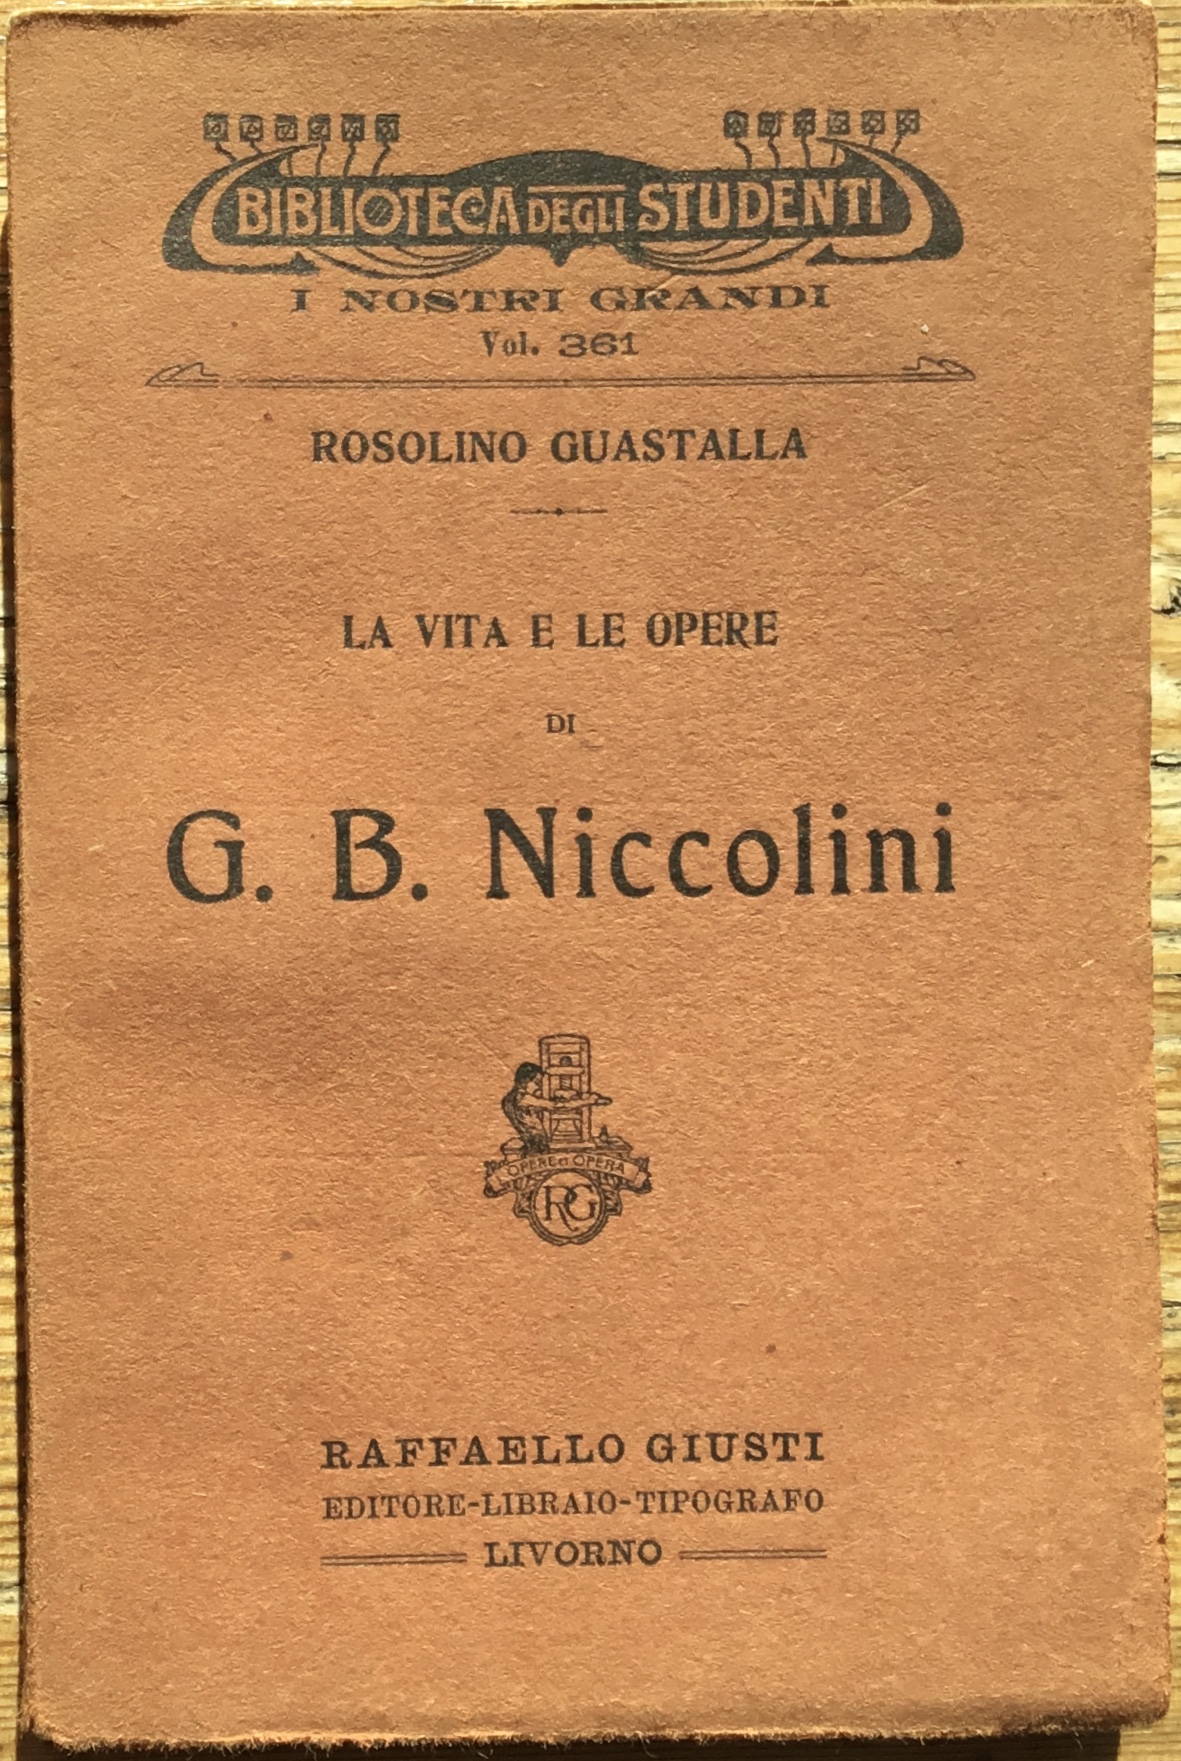 La vita e le opere di G. B. Niccolini